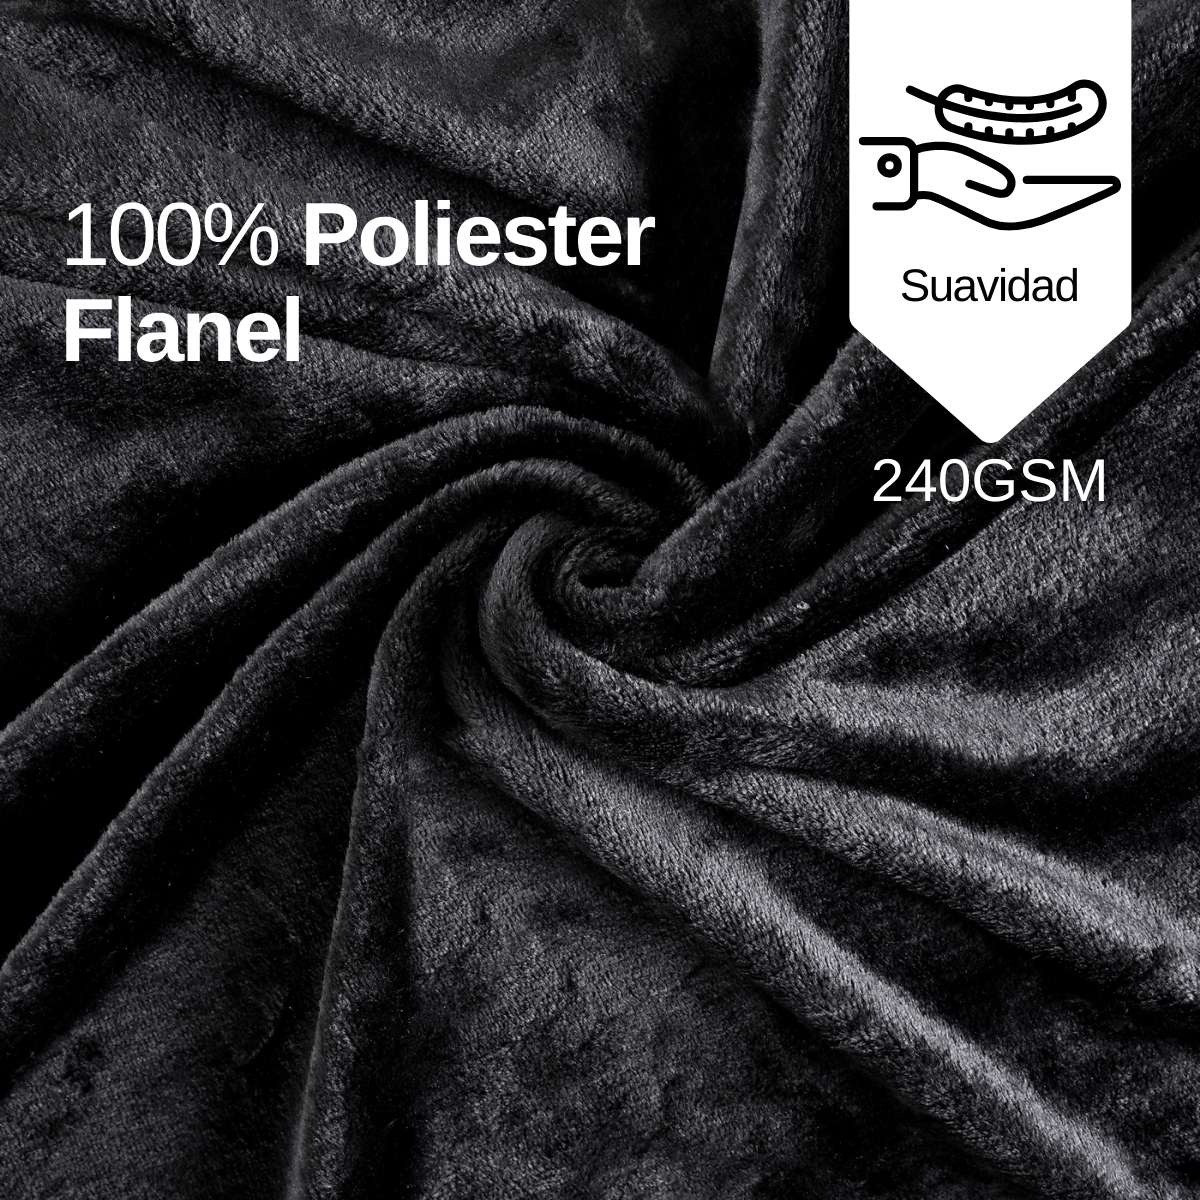 Cobija de flanel color negro tamaño queen size , 100% poliéster